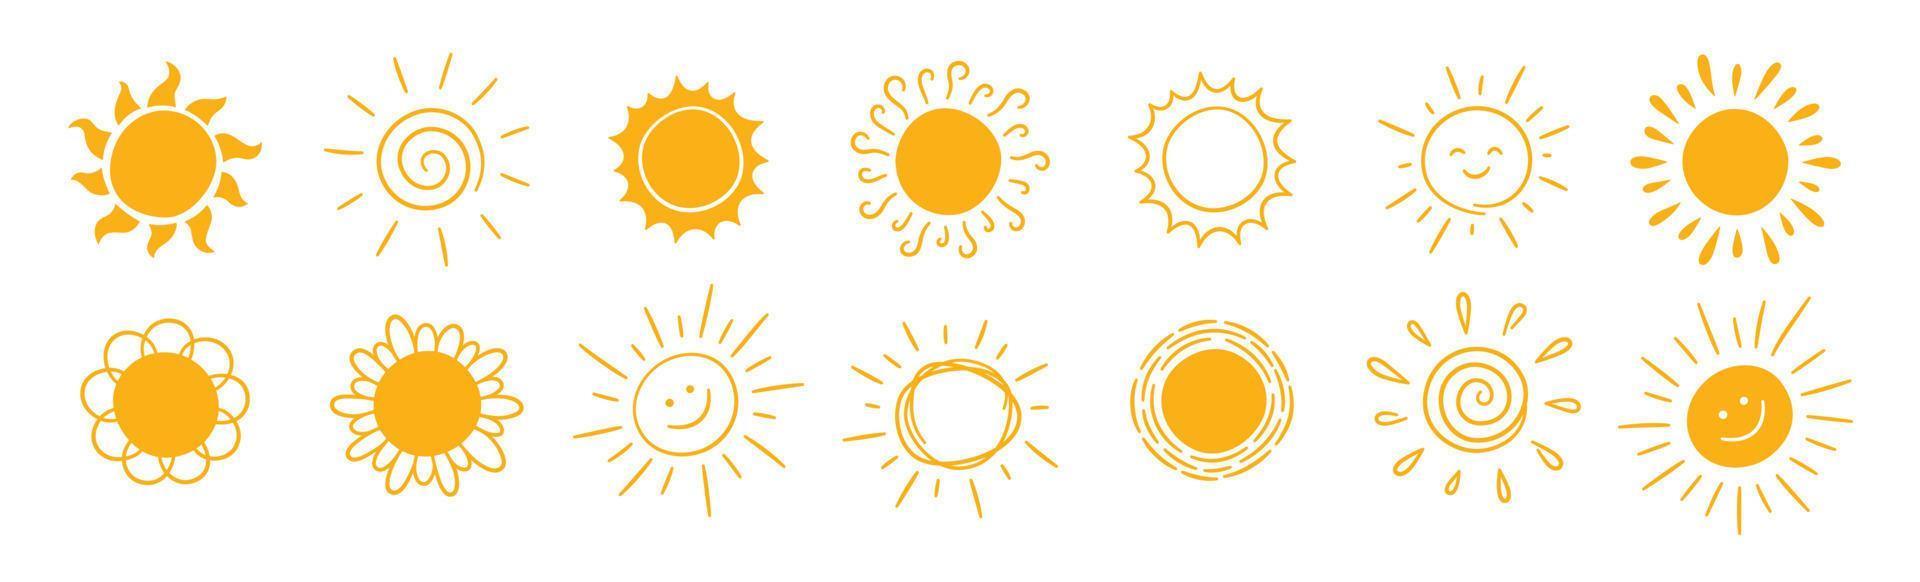 doodle conjunto de ícones de sol diferente. rabiscar sol amarelo com símbolos de raios. doodle coleção de desenhos de crianças. explosão desenhada à mão. sinal de tempo quente. ilustração vetorial isolada no fundo branco vetor